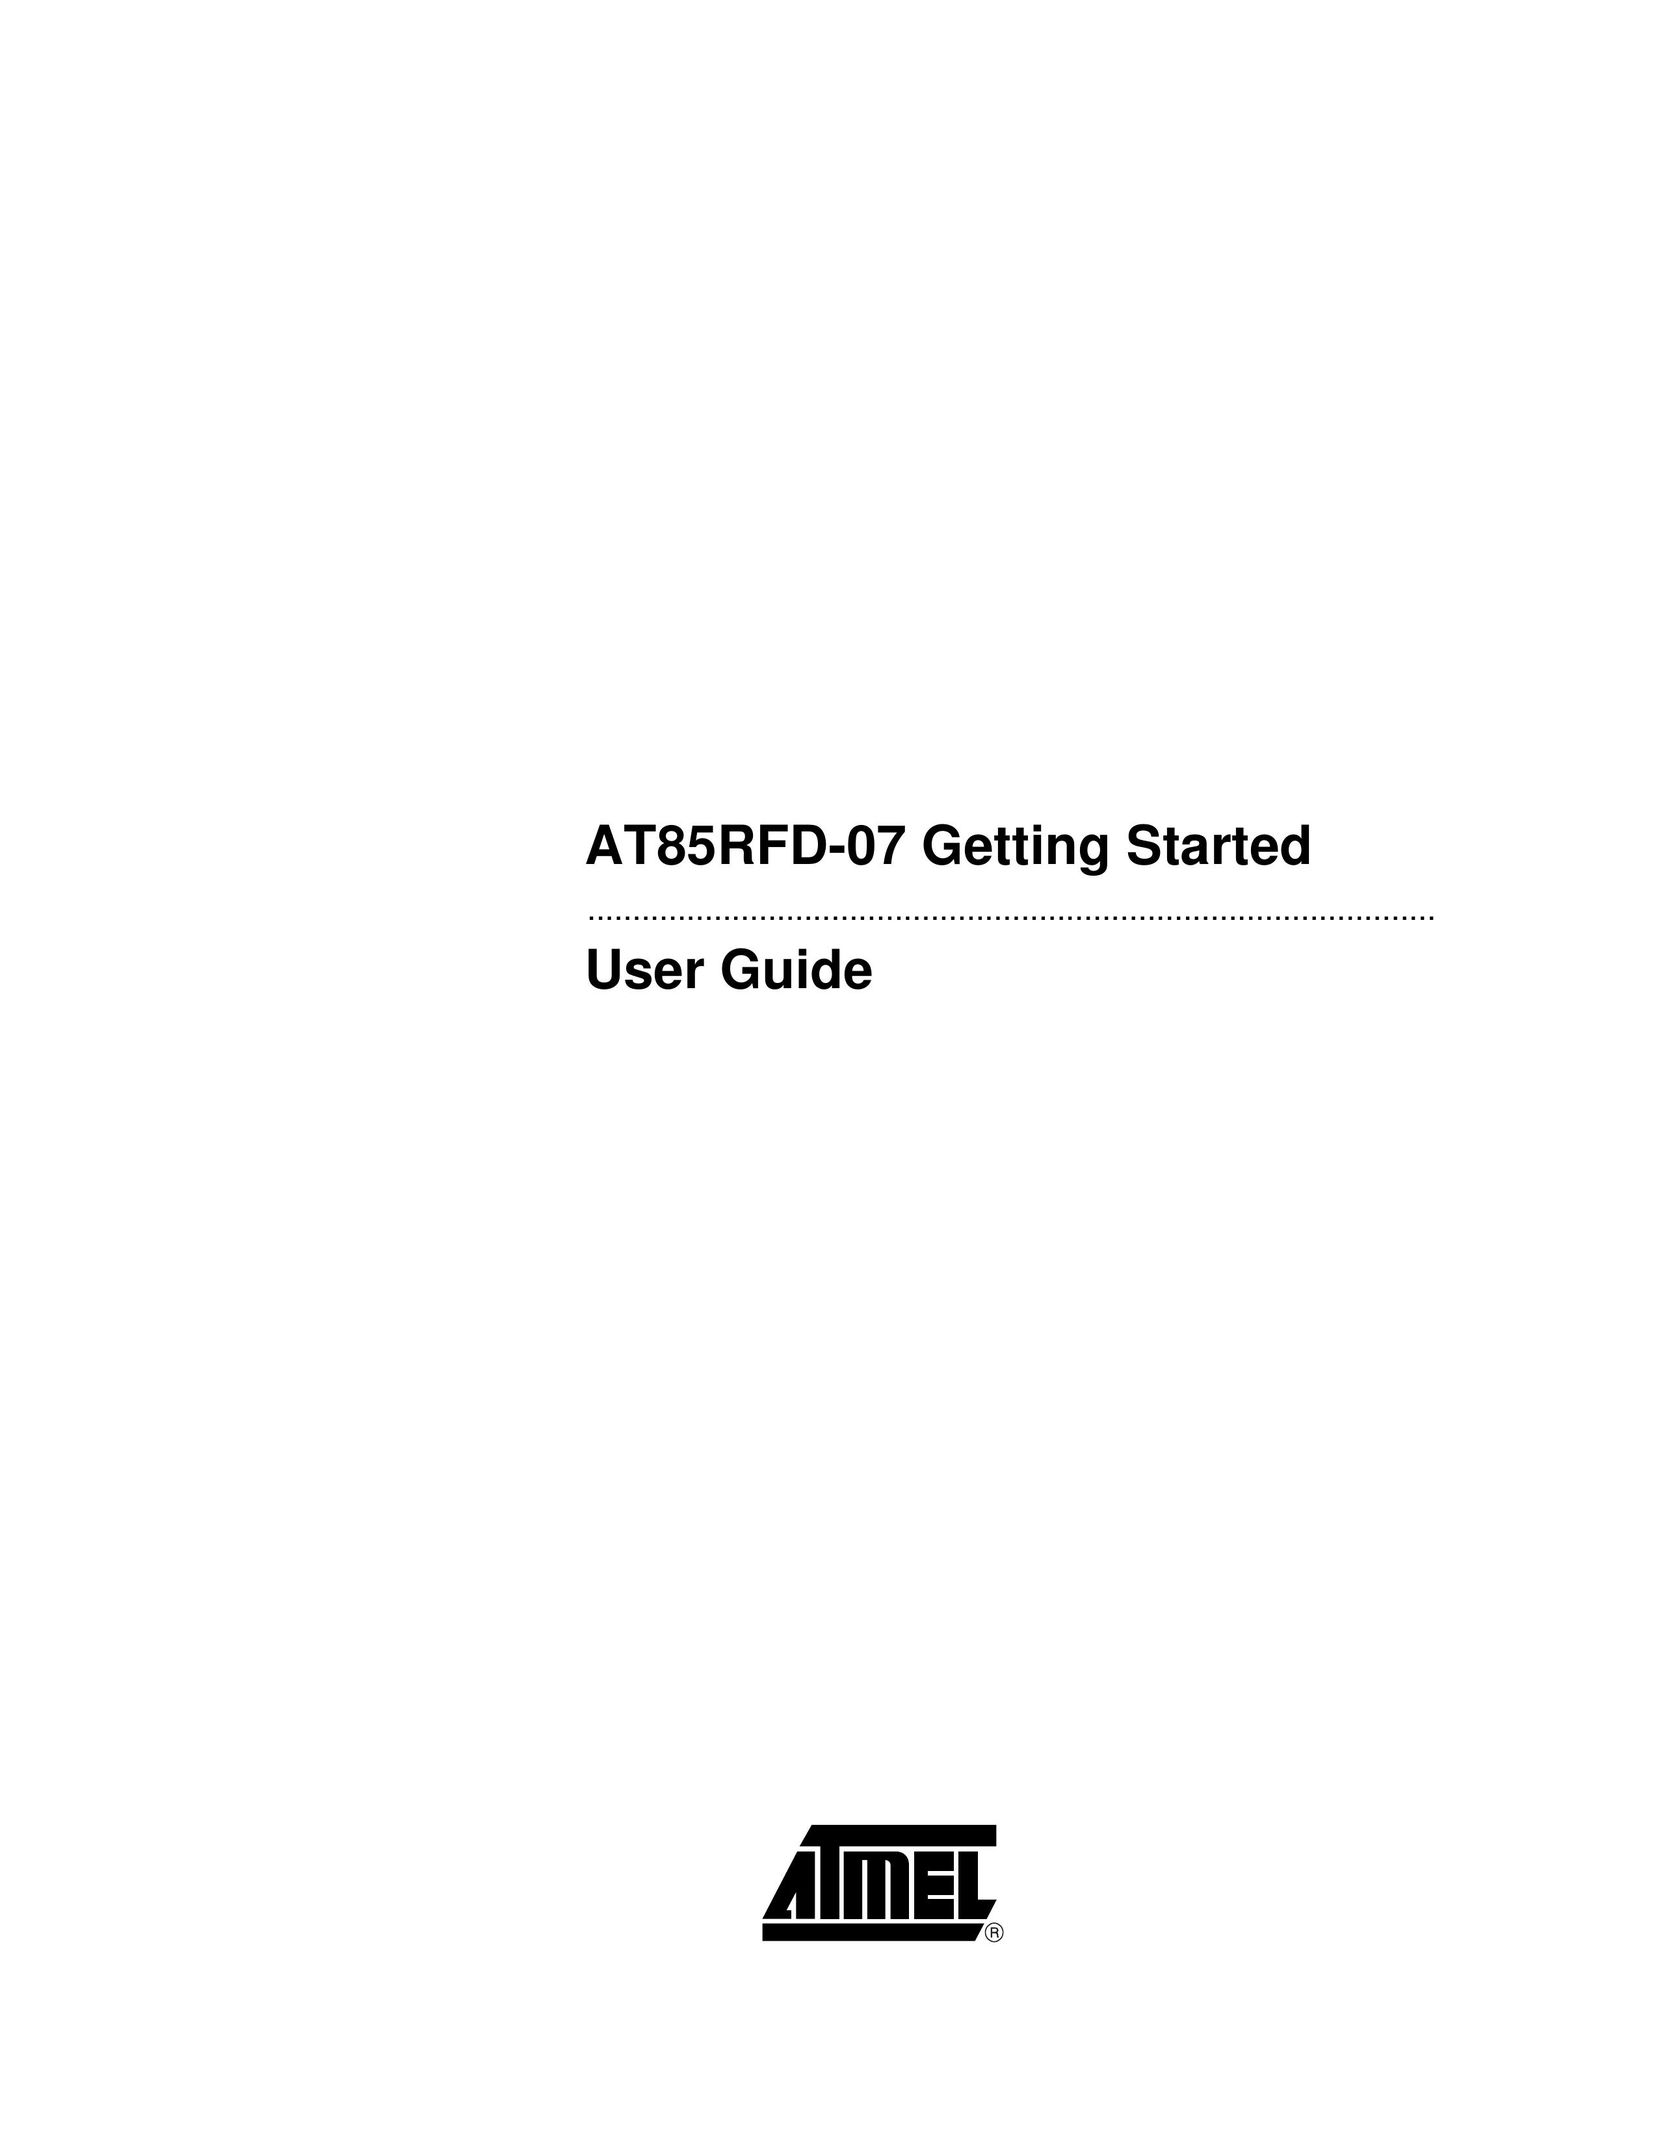 Atmel AT85RFD-07 Computer Drive User Manual